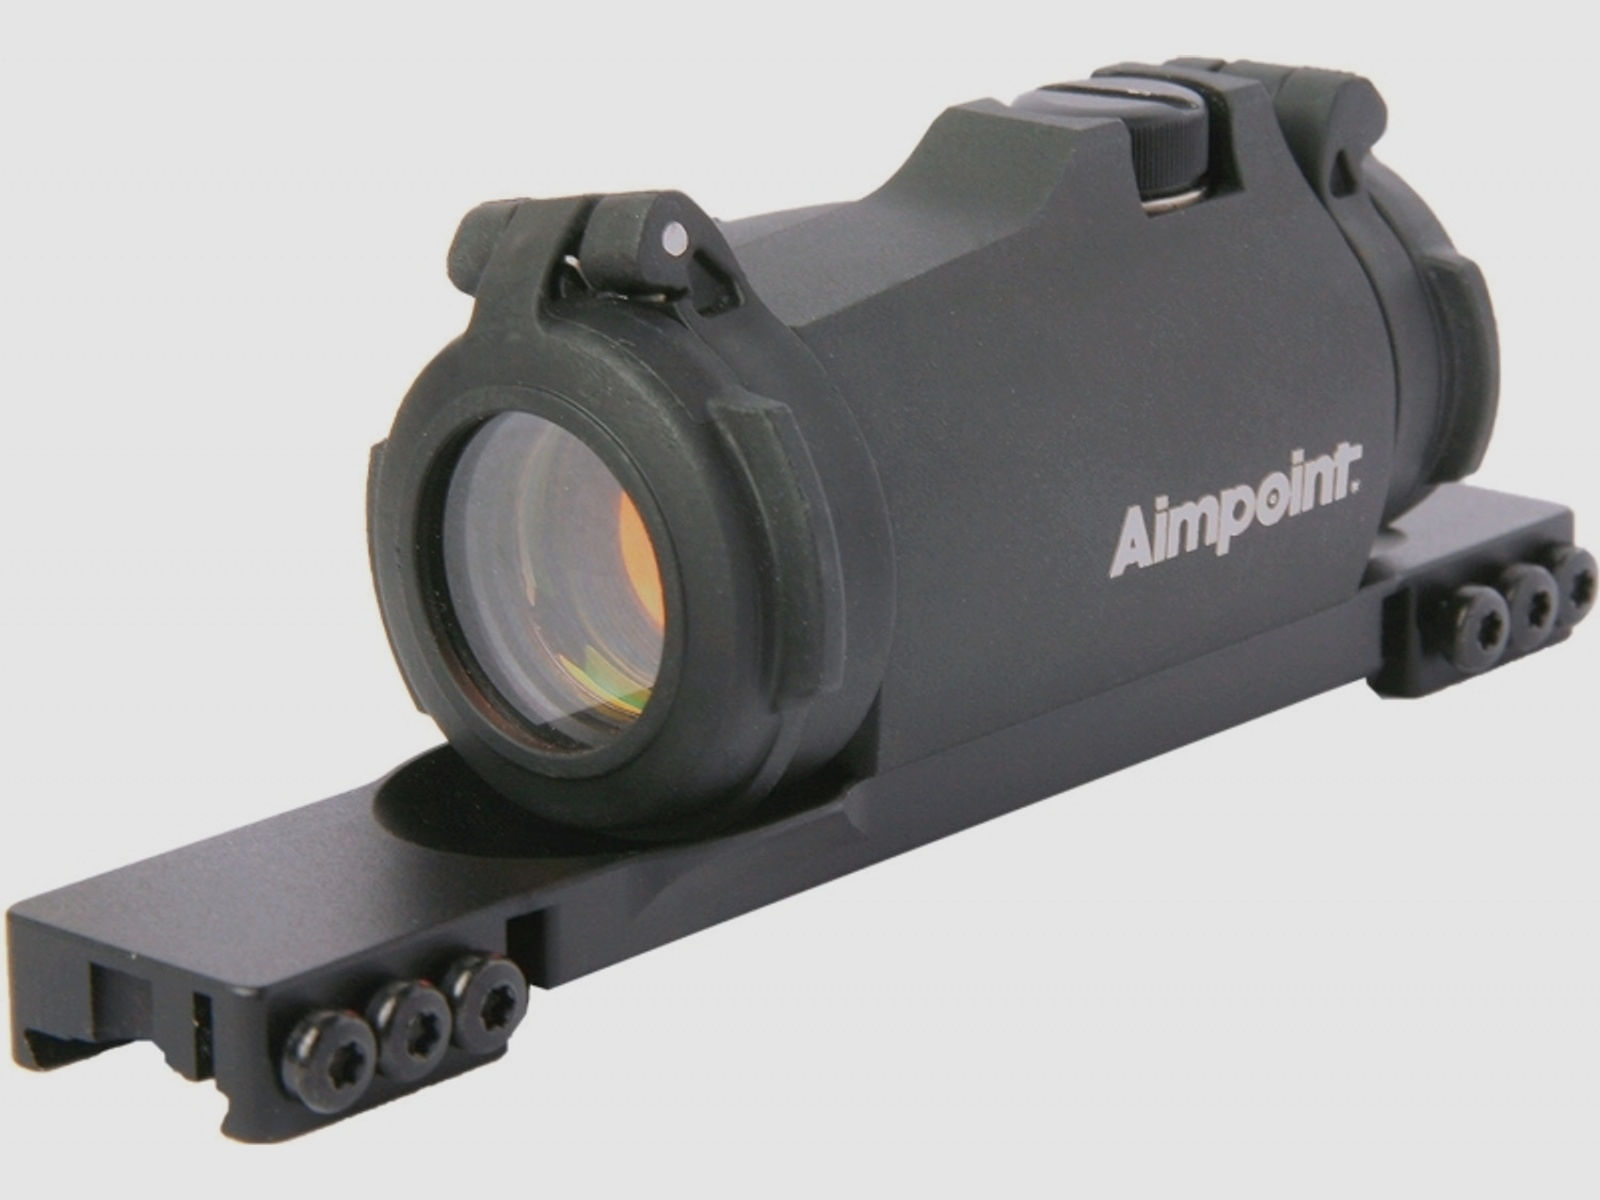 Aimpoint Micro H-2 Leuchtpunktvisier mit Montageschiene f. Tikka T3